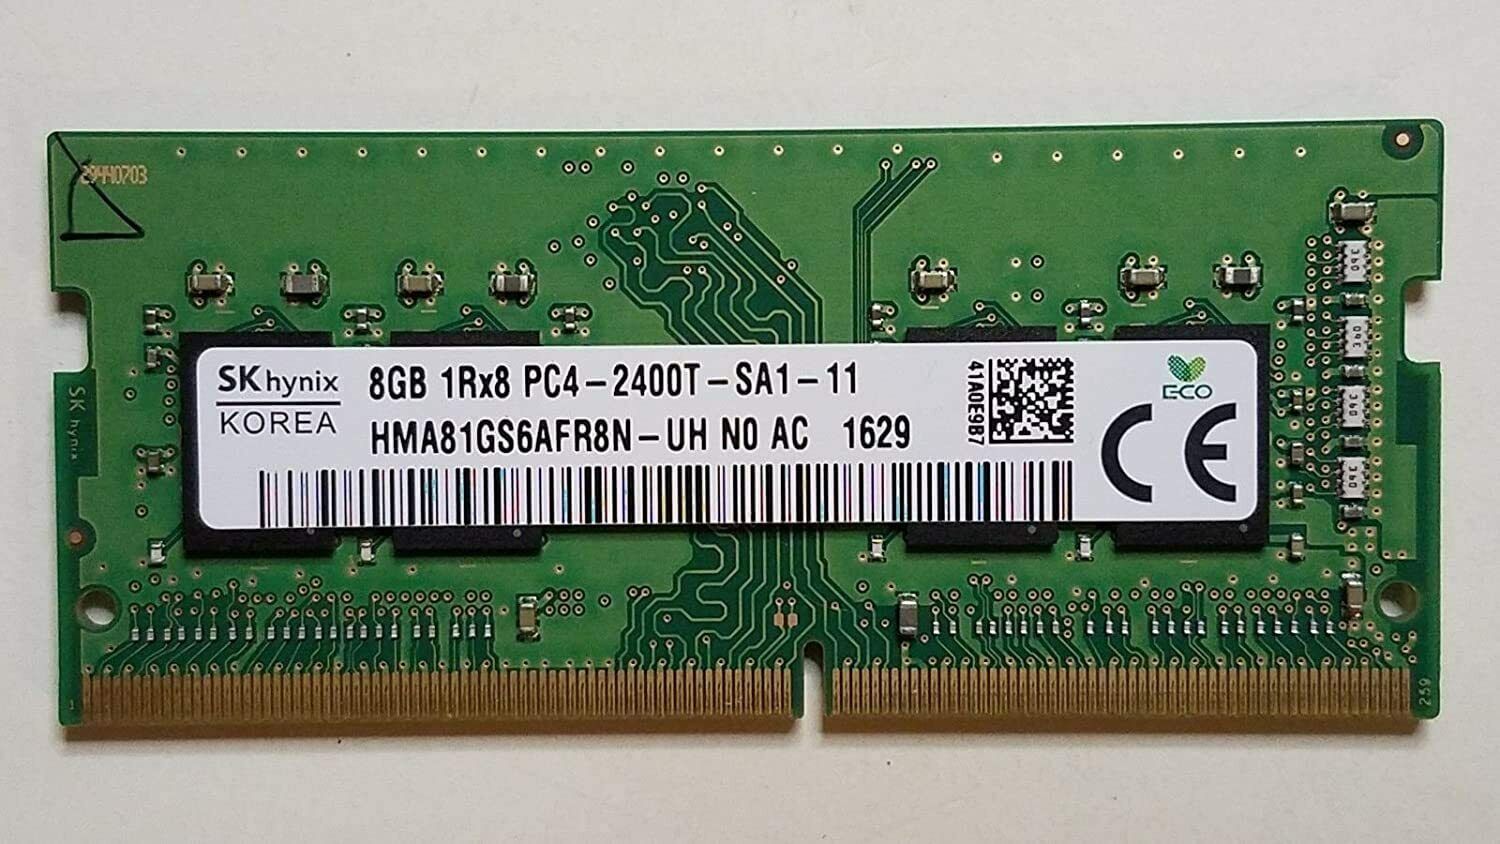 SK Hynix 8GB 1Rx8 PC4-2400T DDR4 2400MHz SODIMM Laptop Memory HMA81GS6AFR8N-UH